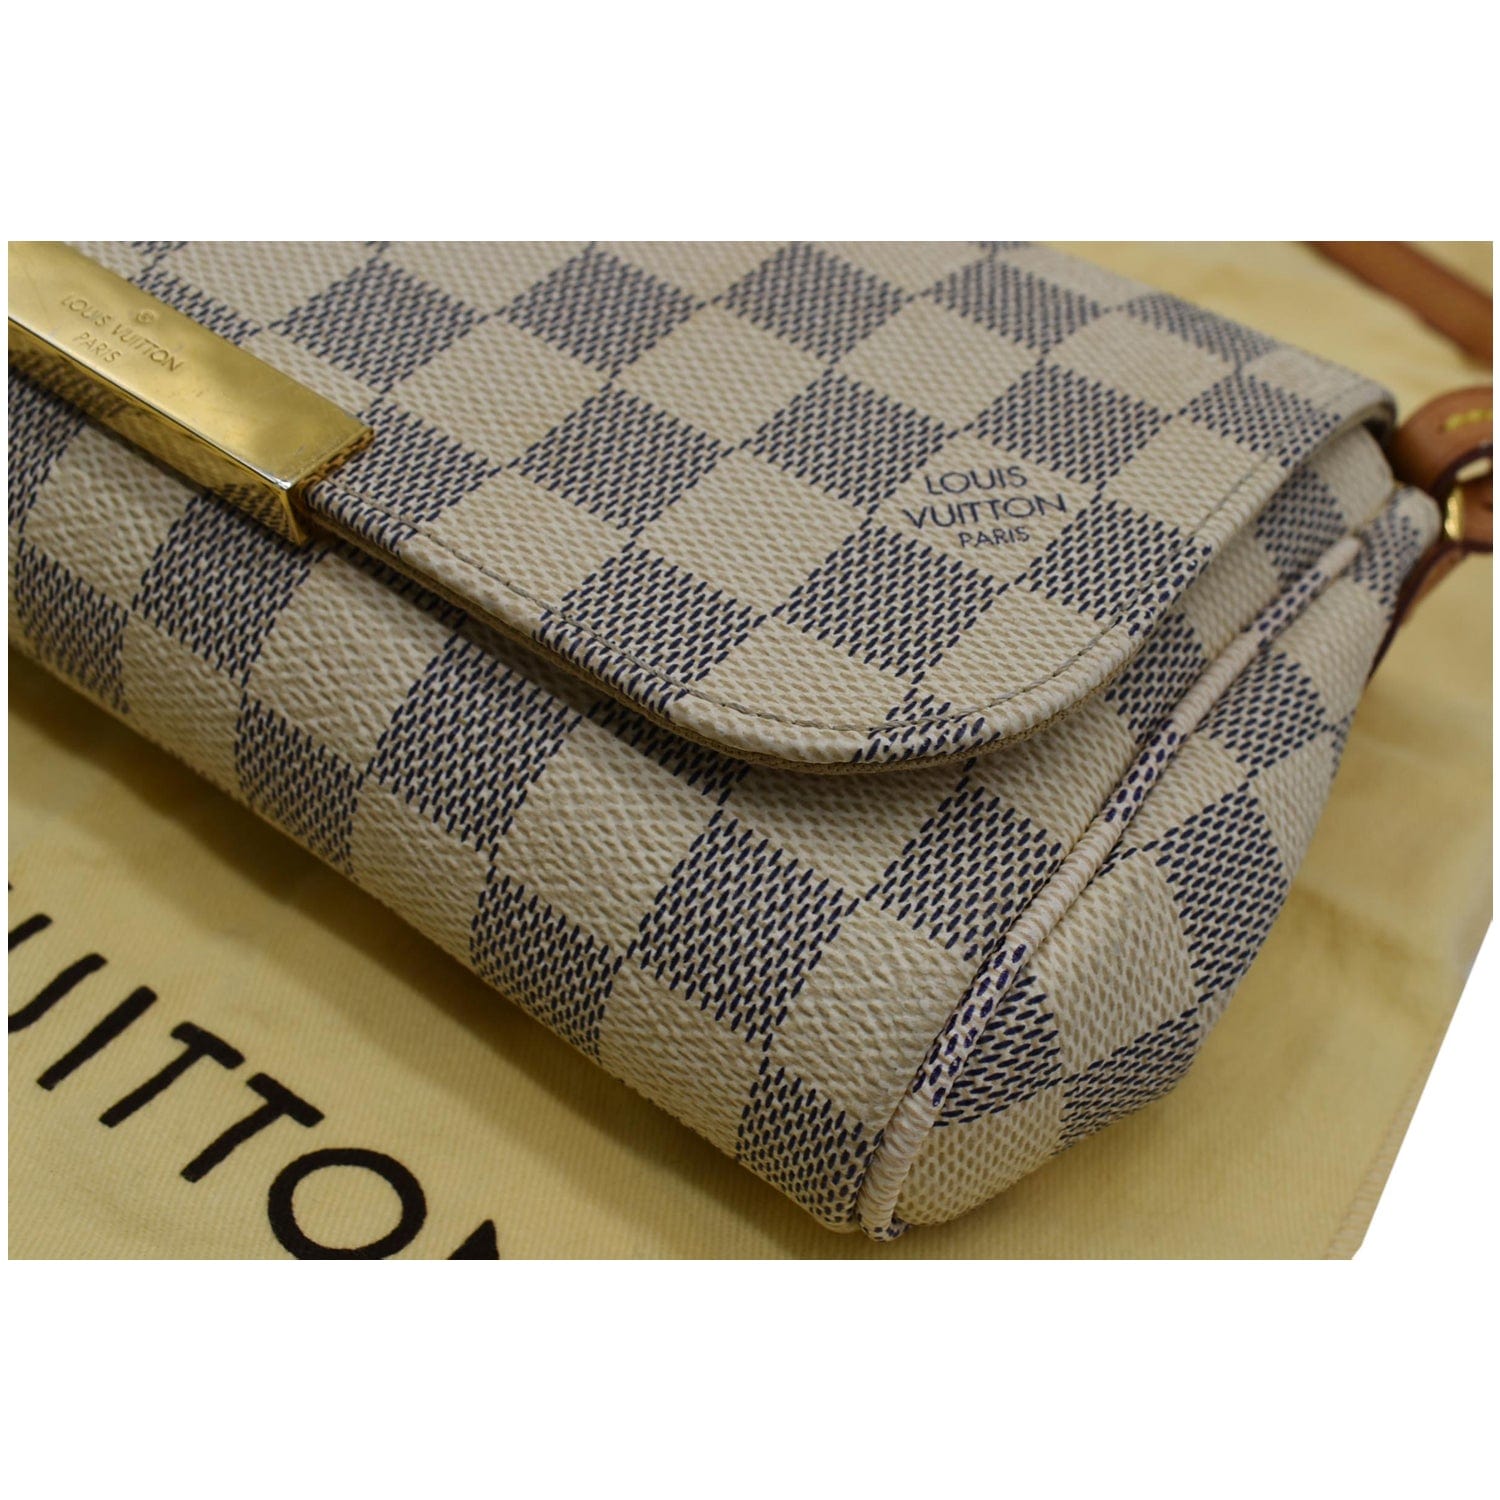 Louis Vuitton Damier Azur Canvas Favorite MM Bag For Sale at